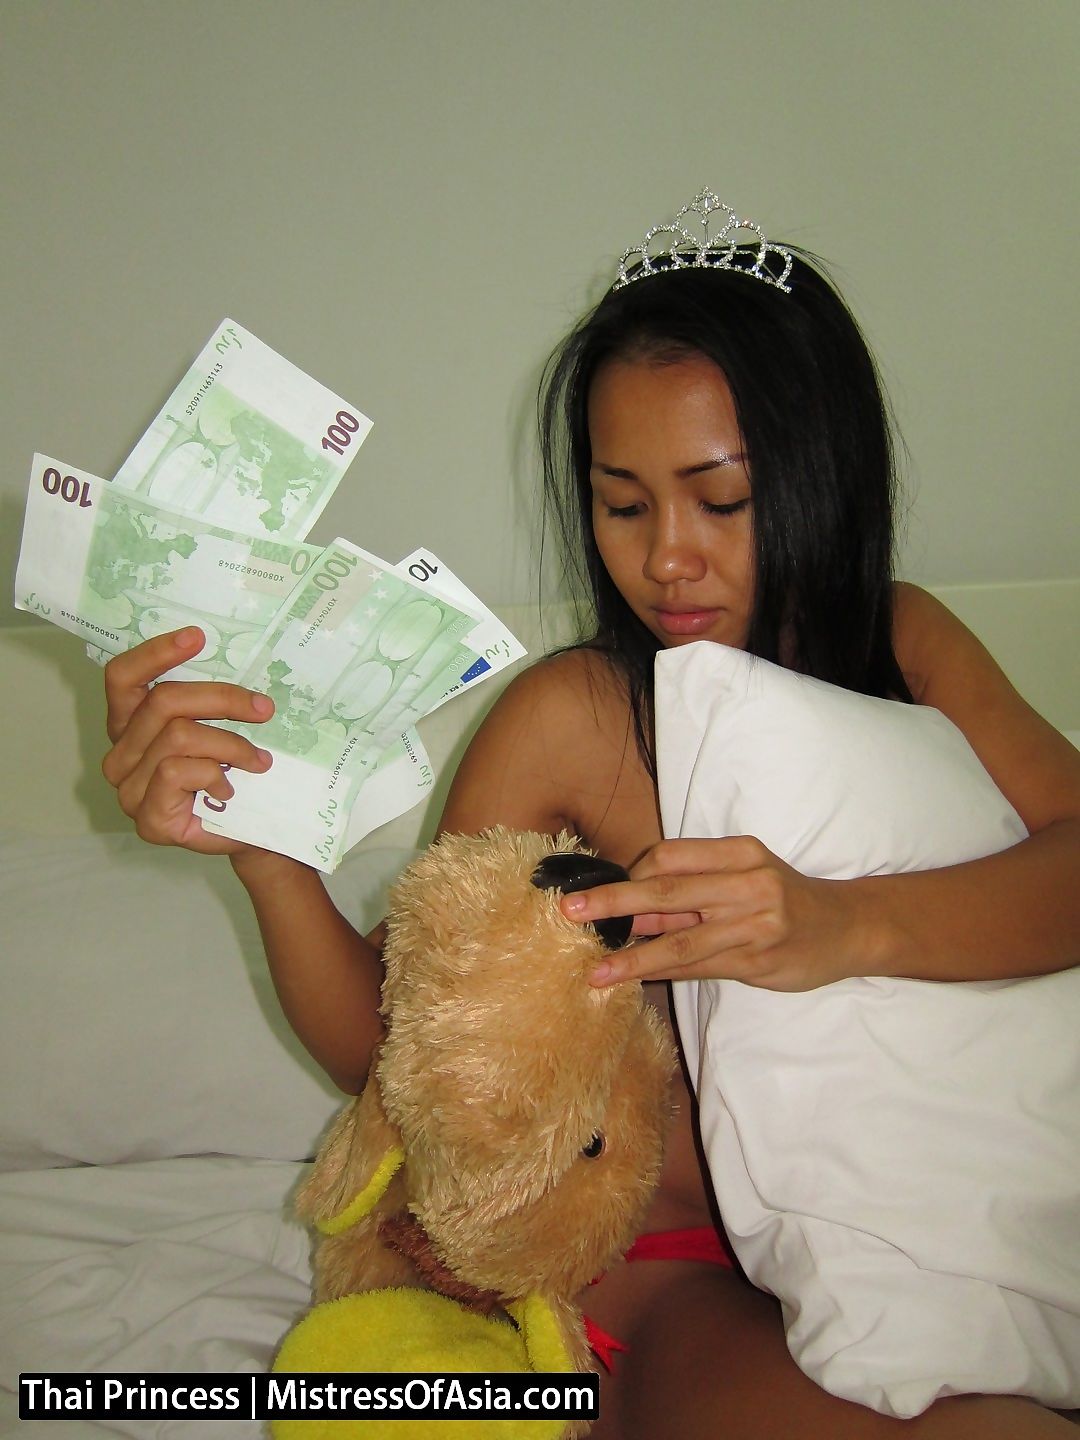 Thai princess dominates weak men for cash - part 1460 page 1